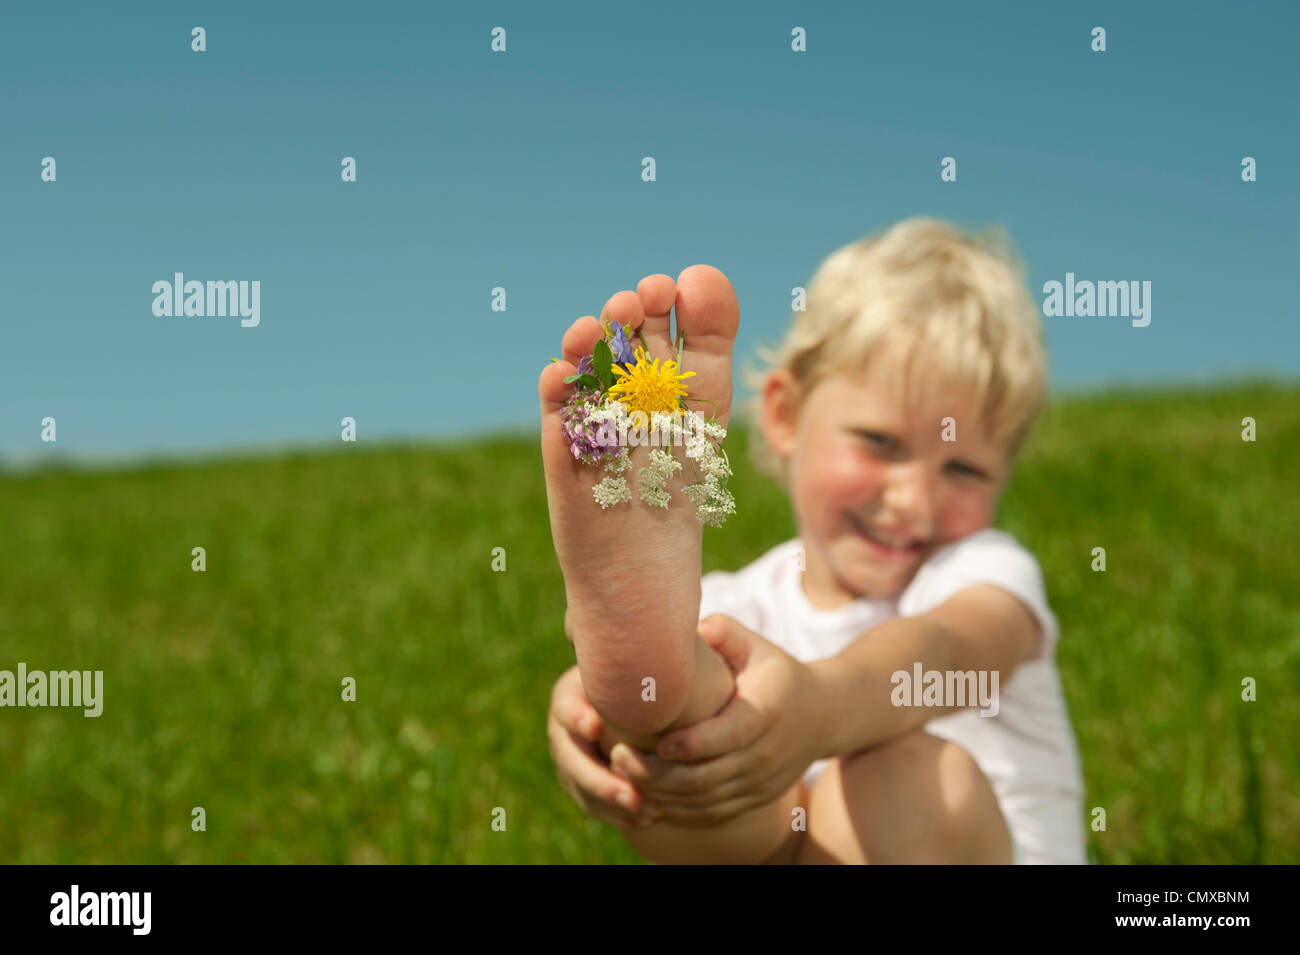 Deutschland, Bayern, Mädchen spielen mit Blumen zwischen den Zehen auf dem Rasen, Lächeln, Porträt Stockfoto